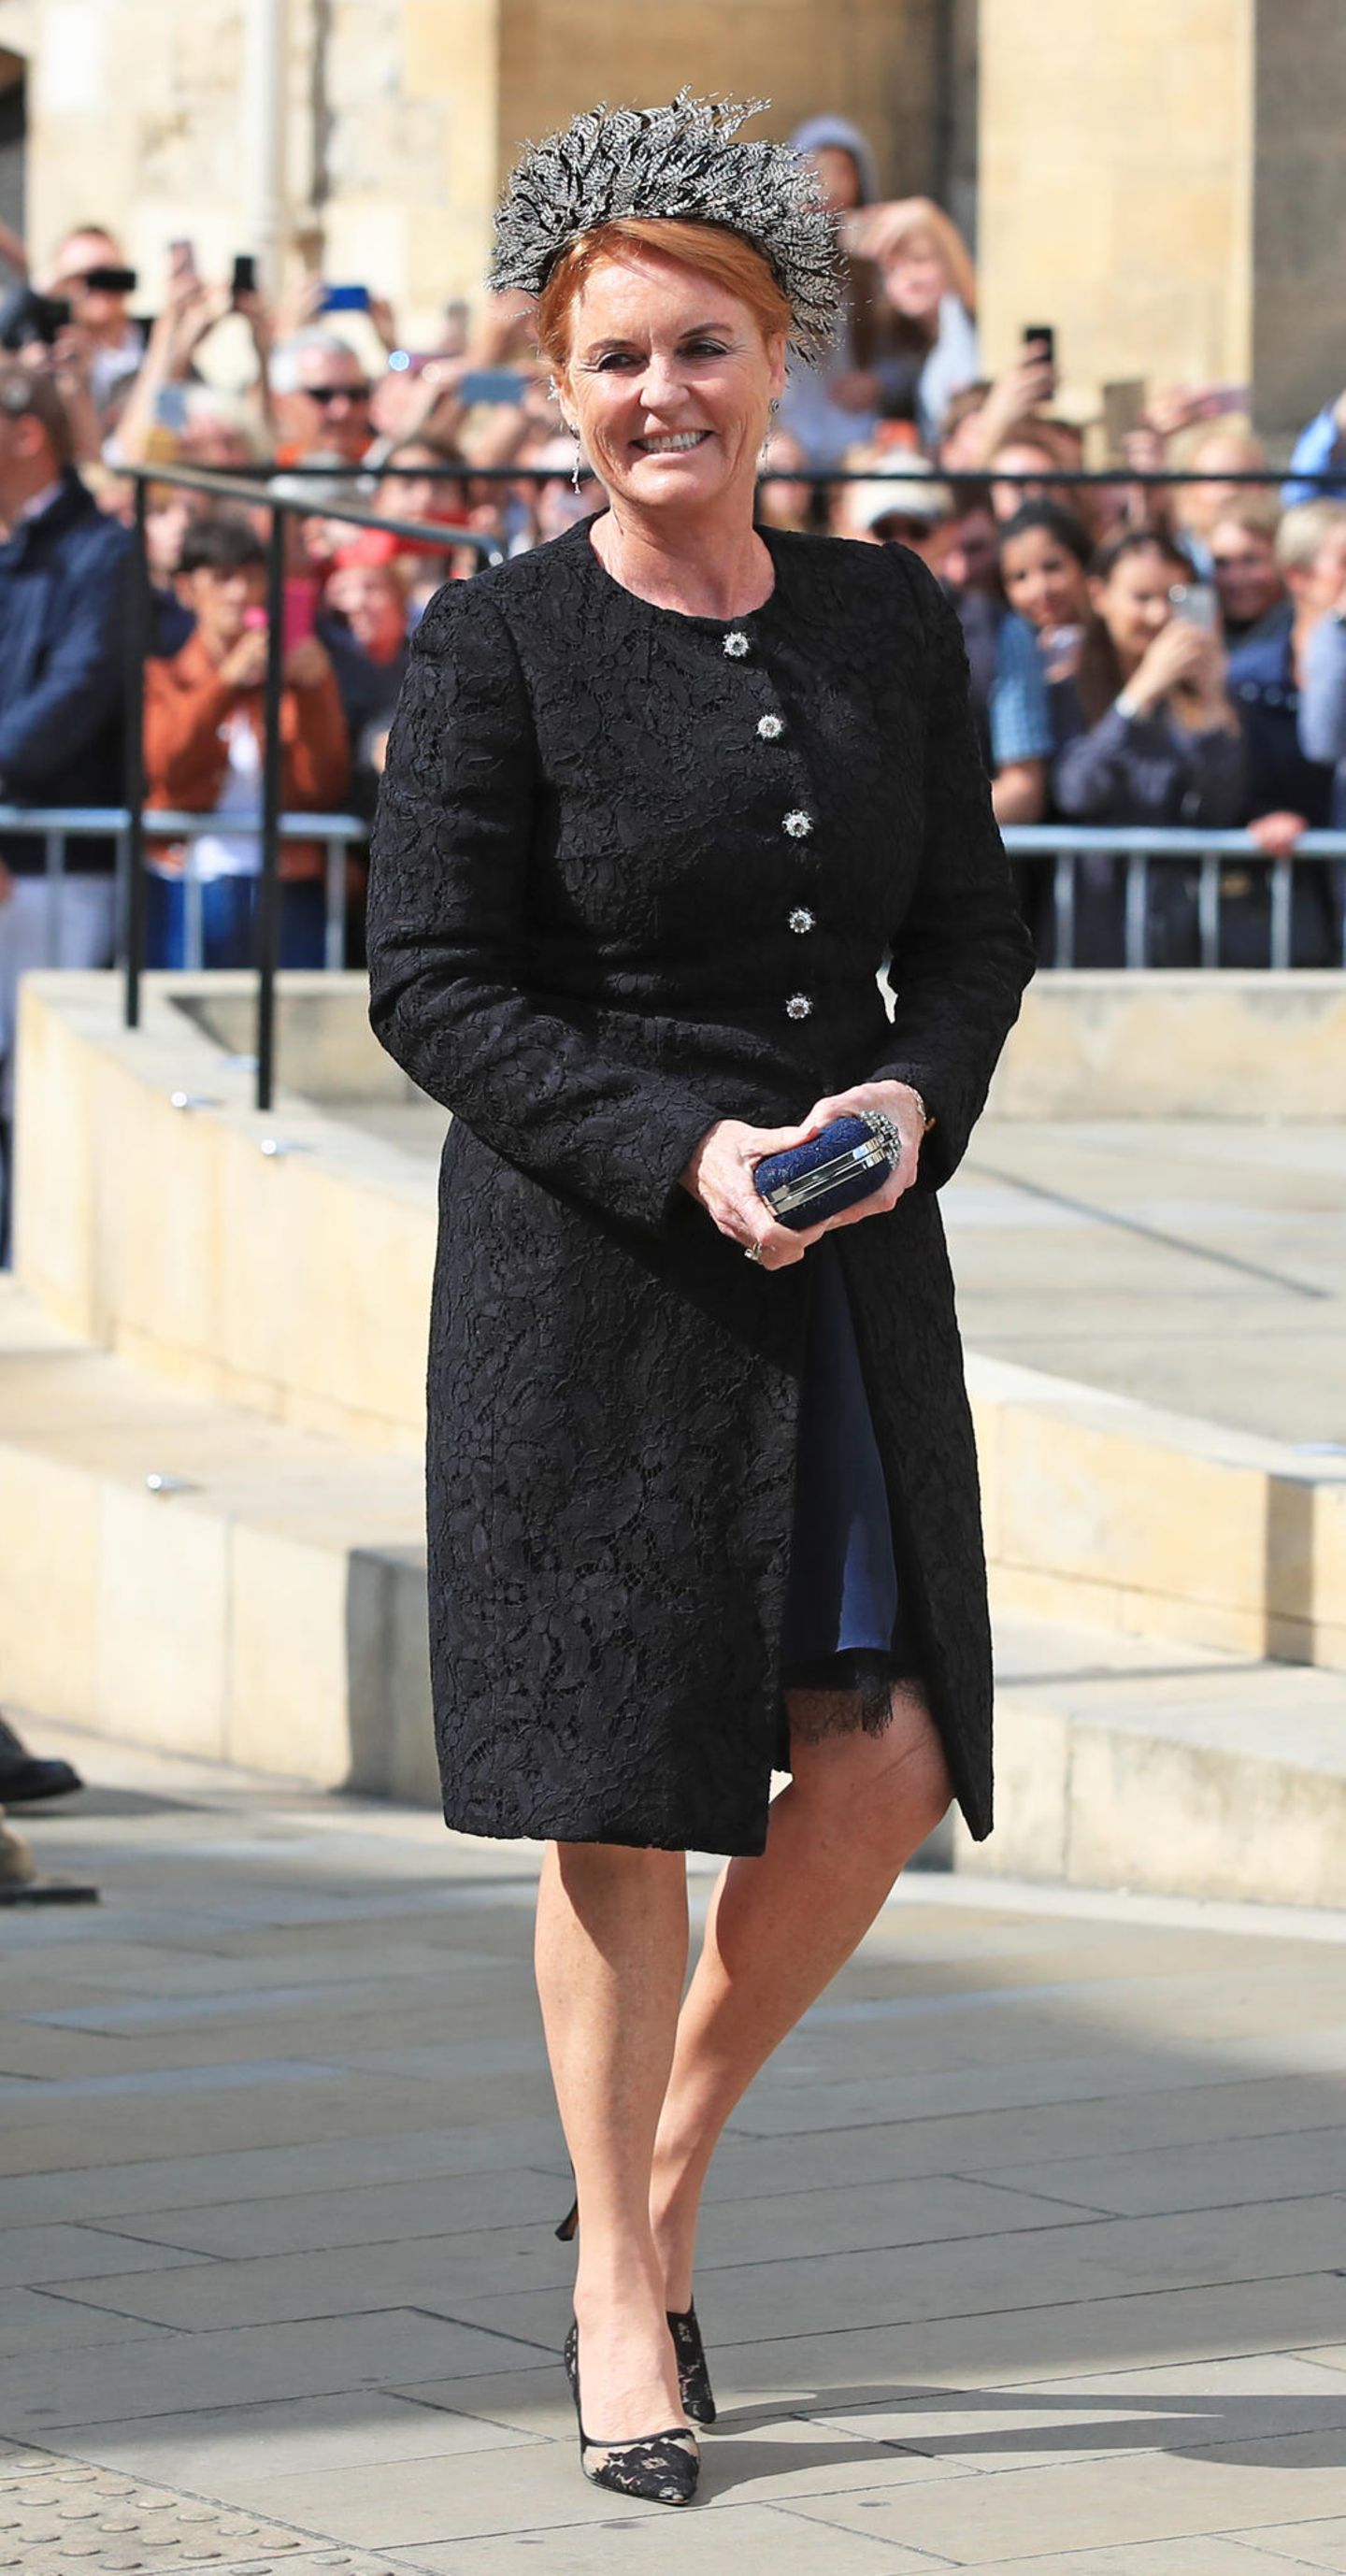 Eine sichtlich gut gelaunte Sarah Ferguson vor der York Minster. Die 59-Jährige kommt in einem schwarzen Look – eigentlich ein No-Go bei einer Hochzeit. Unter dem schwarzen Brokat-Mantel zeigt sich allerdings, dass sie sich für ein blaues Kleid entschieden hat.